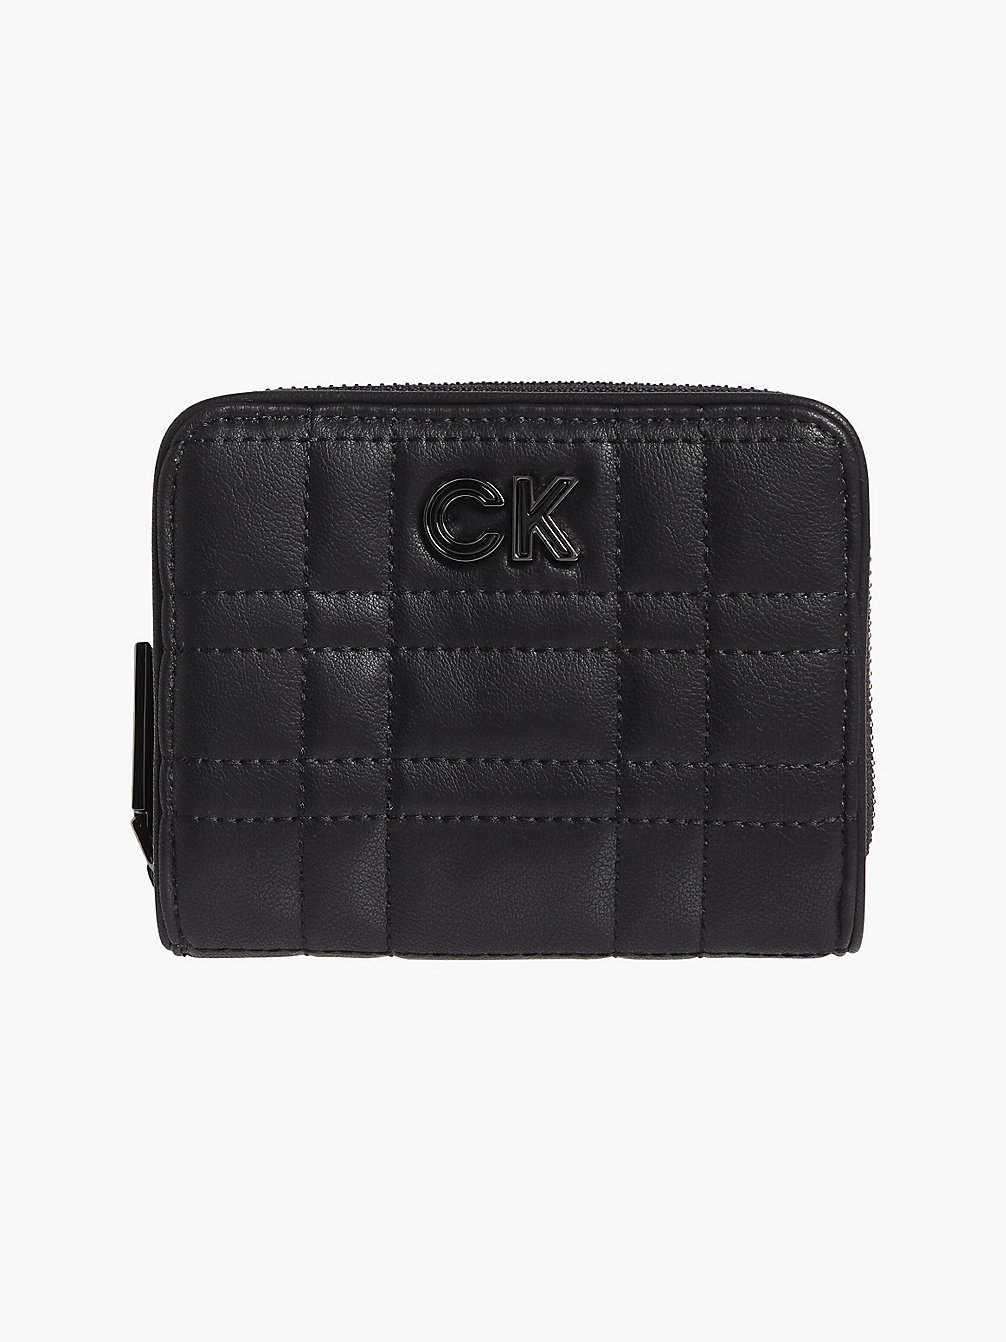 CK BLACK > Gestepptes Portemonnaie Mit Rundum-Reißverschluss Aus Recyceltem Material > undefined Damen - Calvin Klein